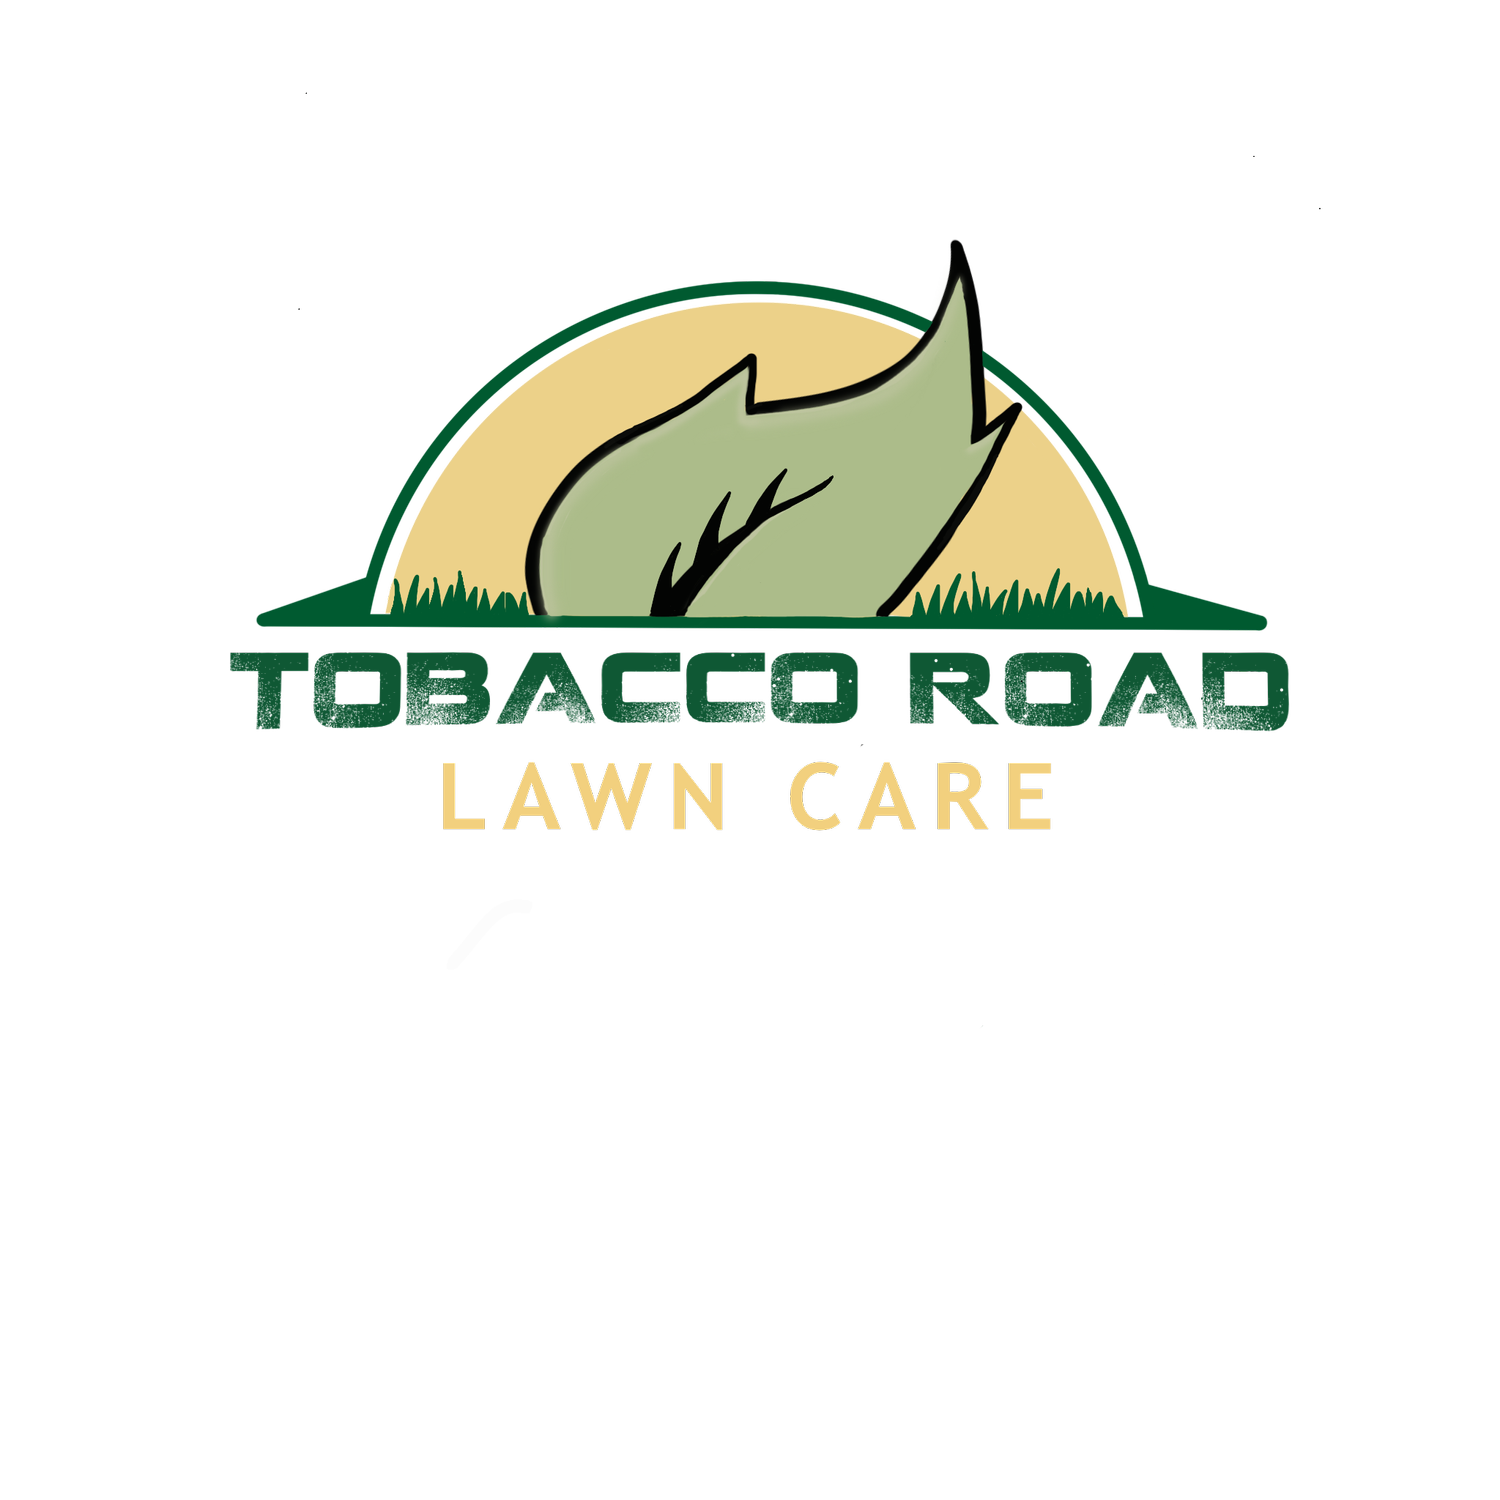 Tobacco Road Lawn Care